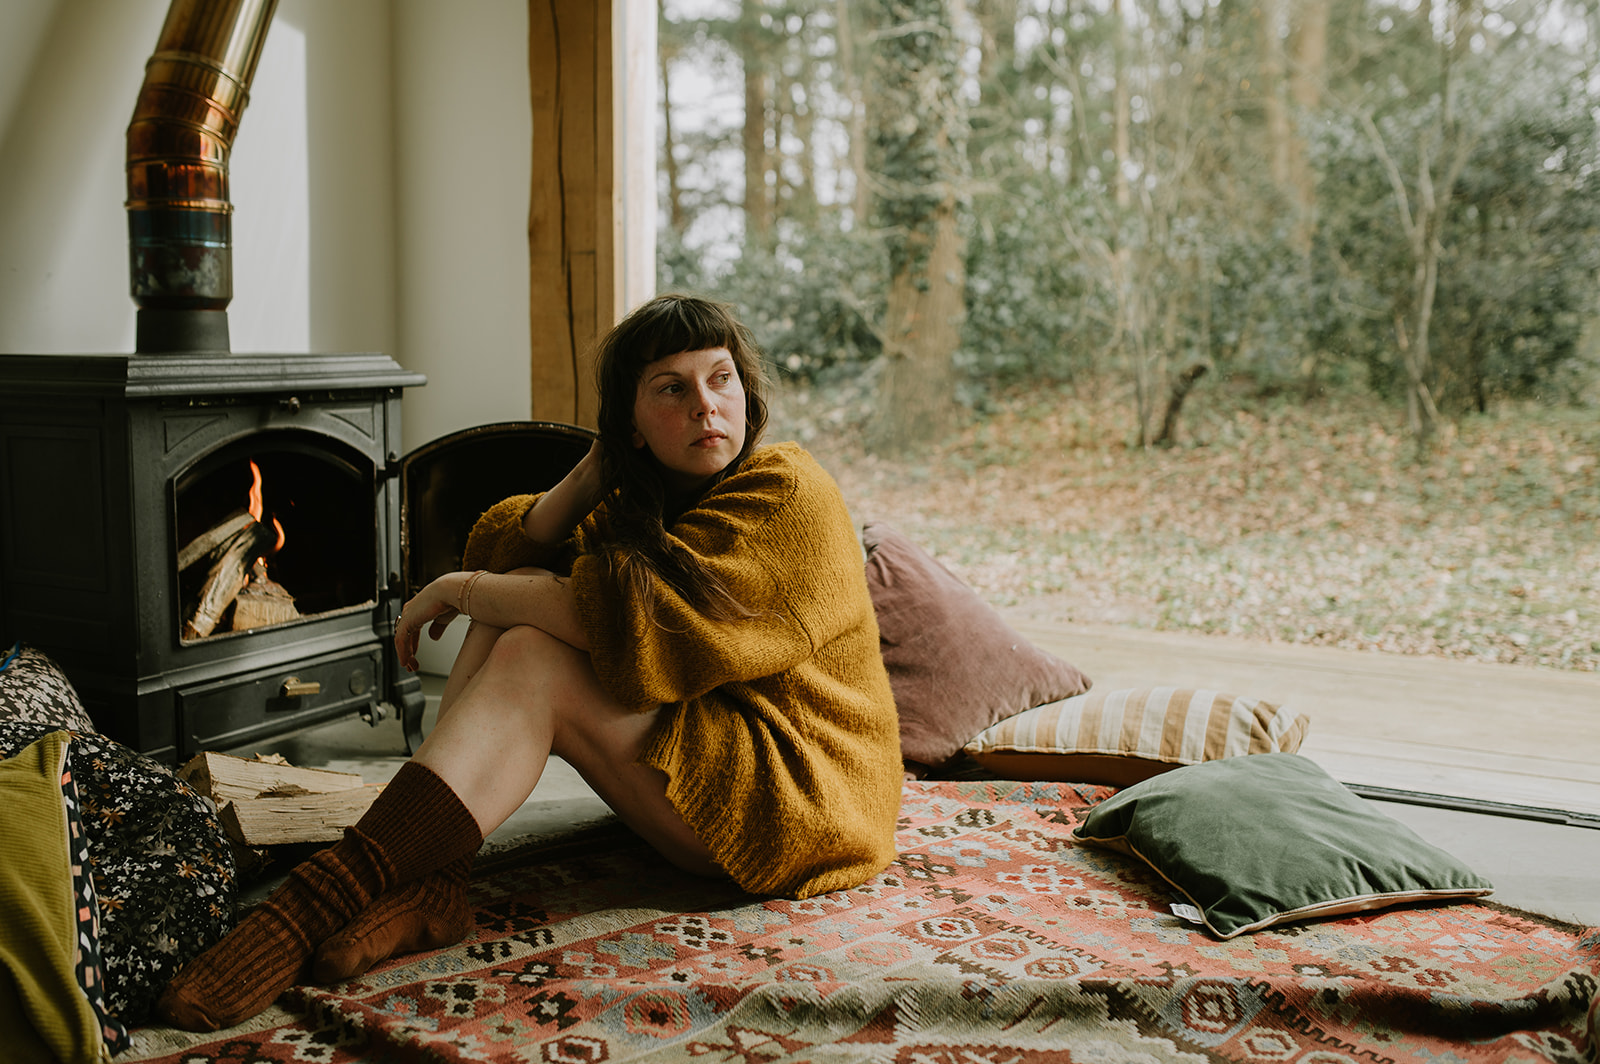 Boudoirshoot, relaxed boudoir fotografie. Vrouwelijke empowermentsessie in een boshuisje. Door Eva Krebbers van Tumblewe